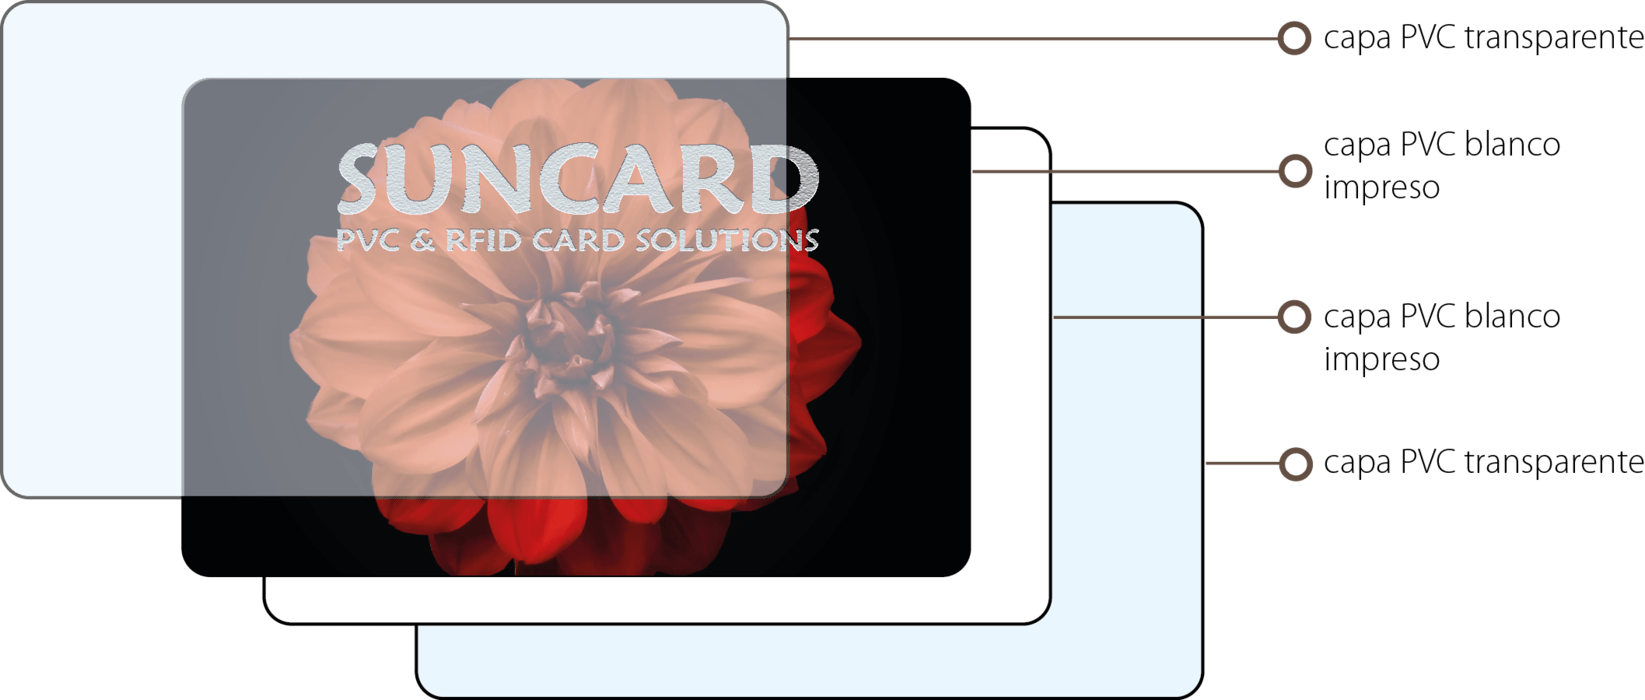 tarjetas PVC laminado suncard